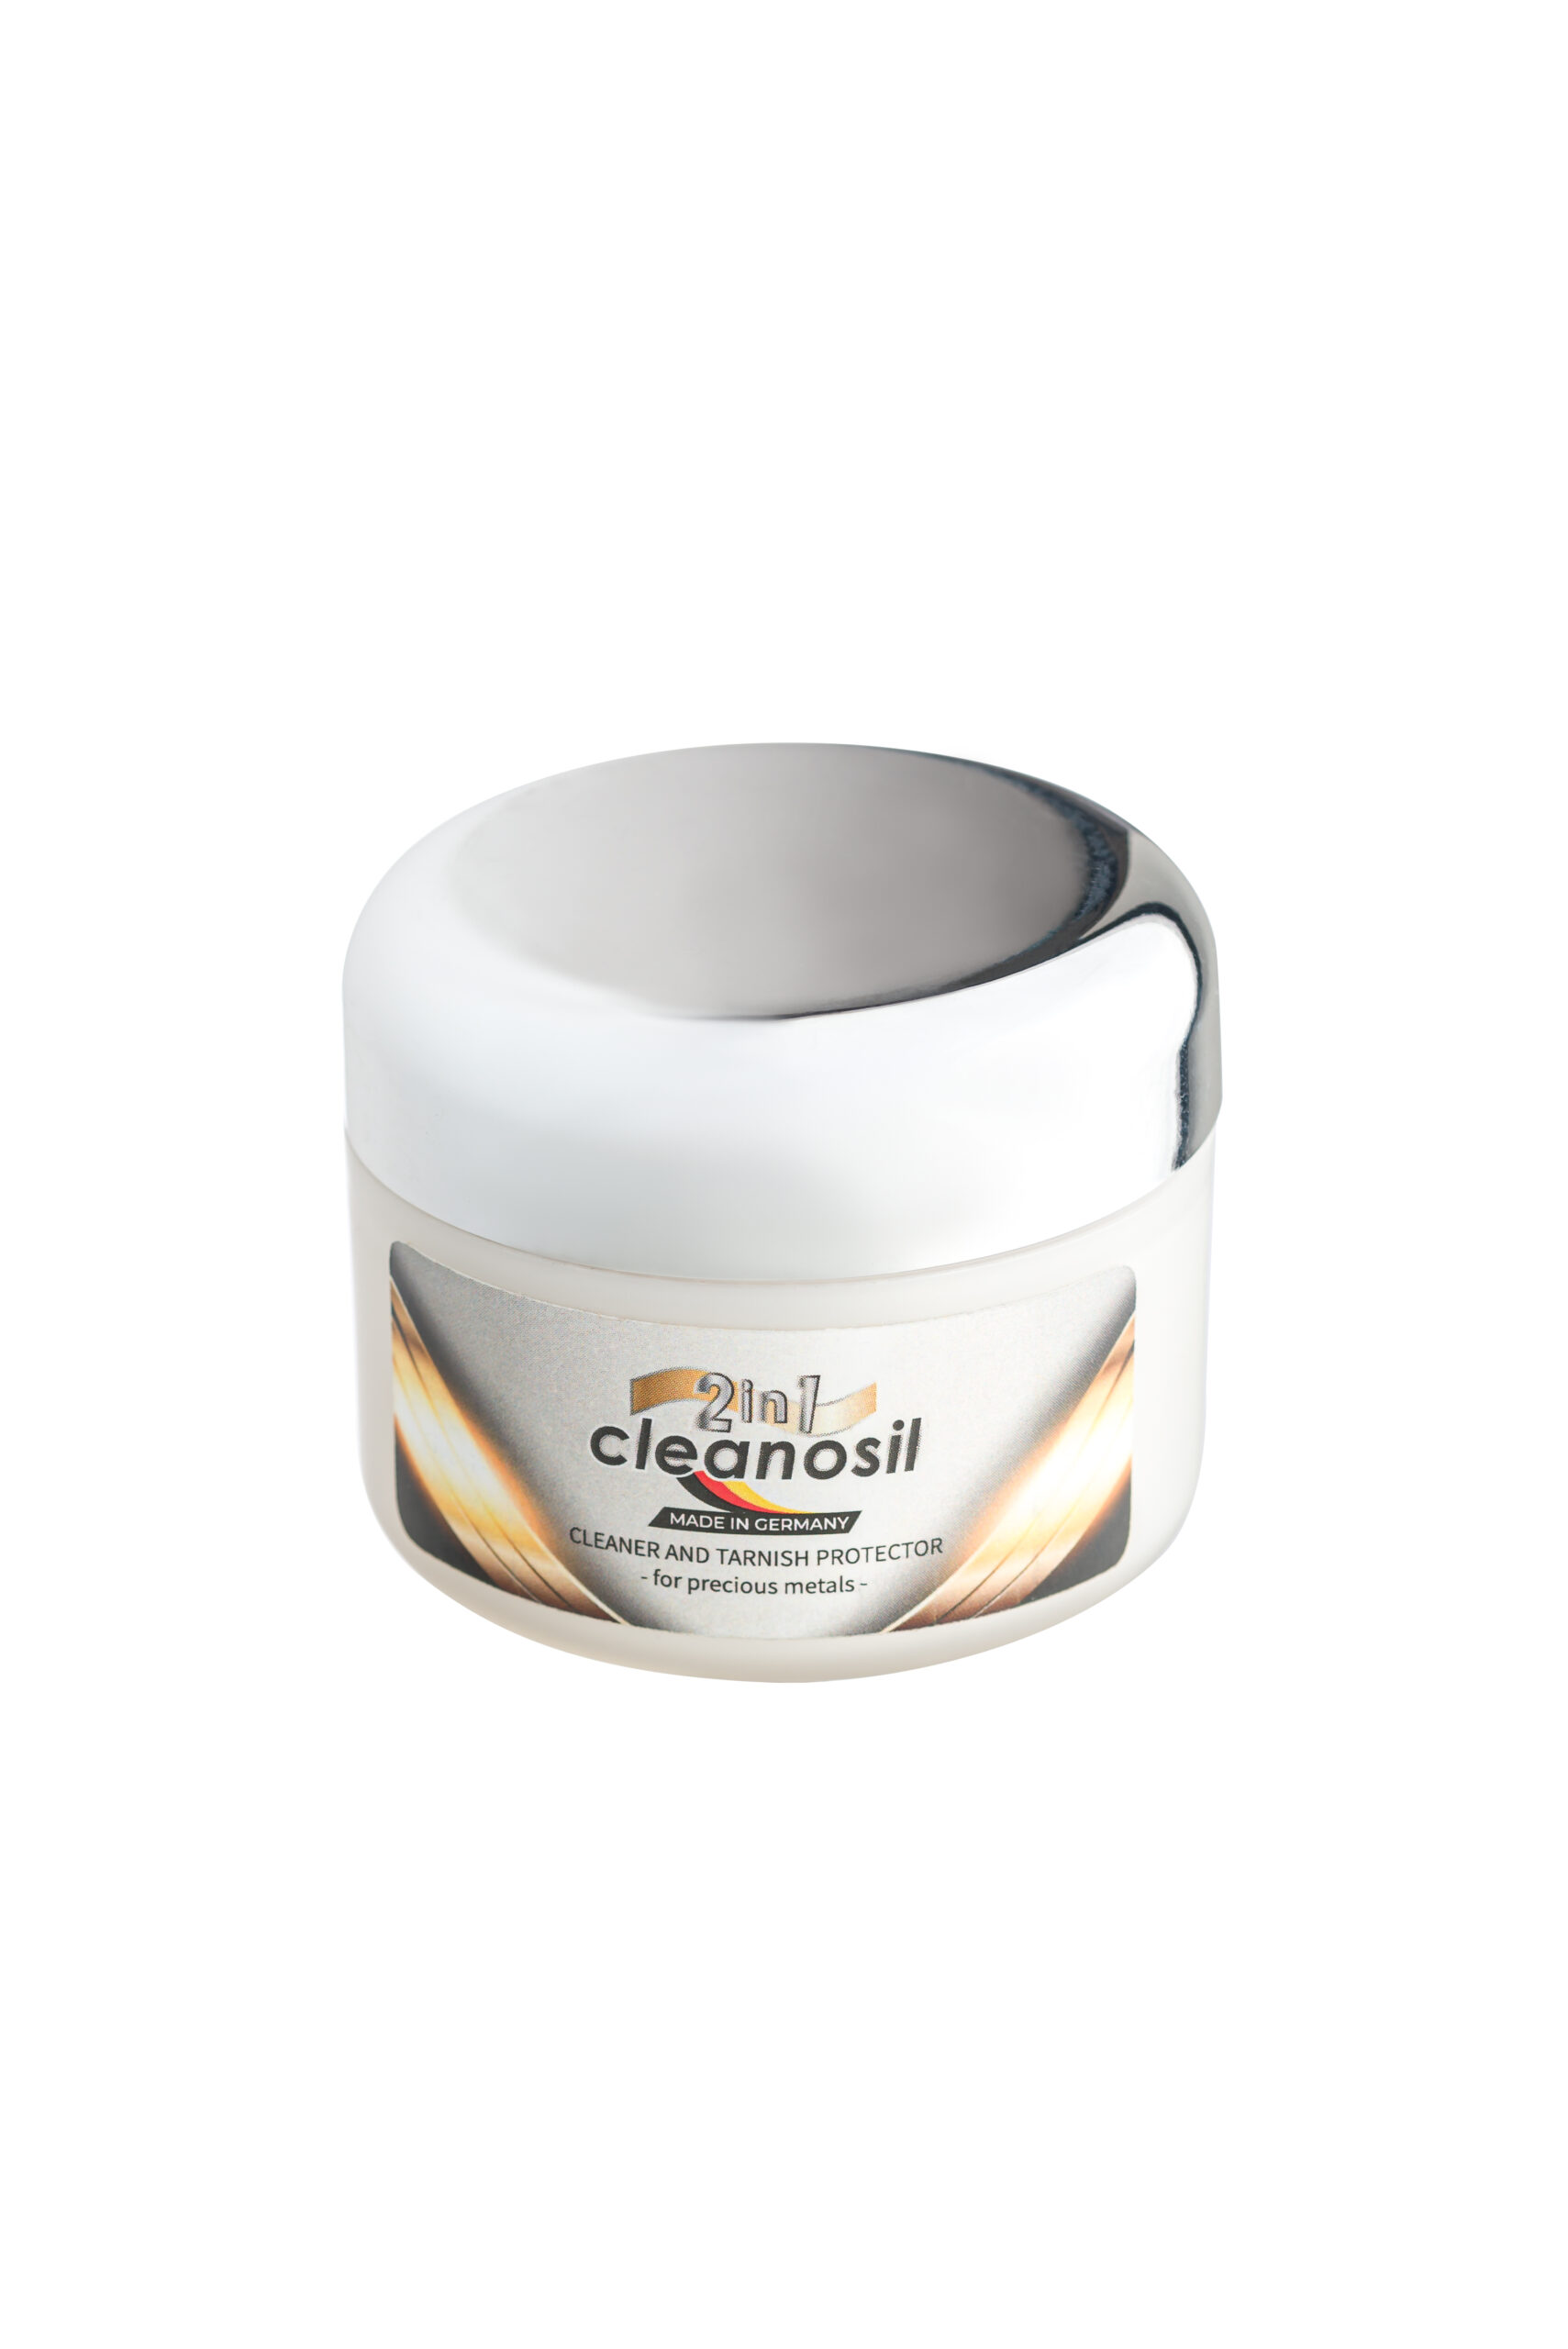 Cleanosil cream